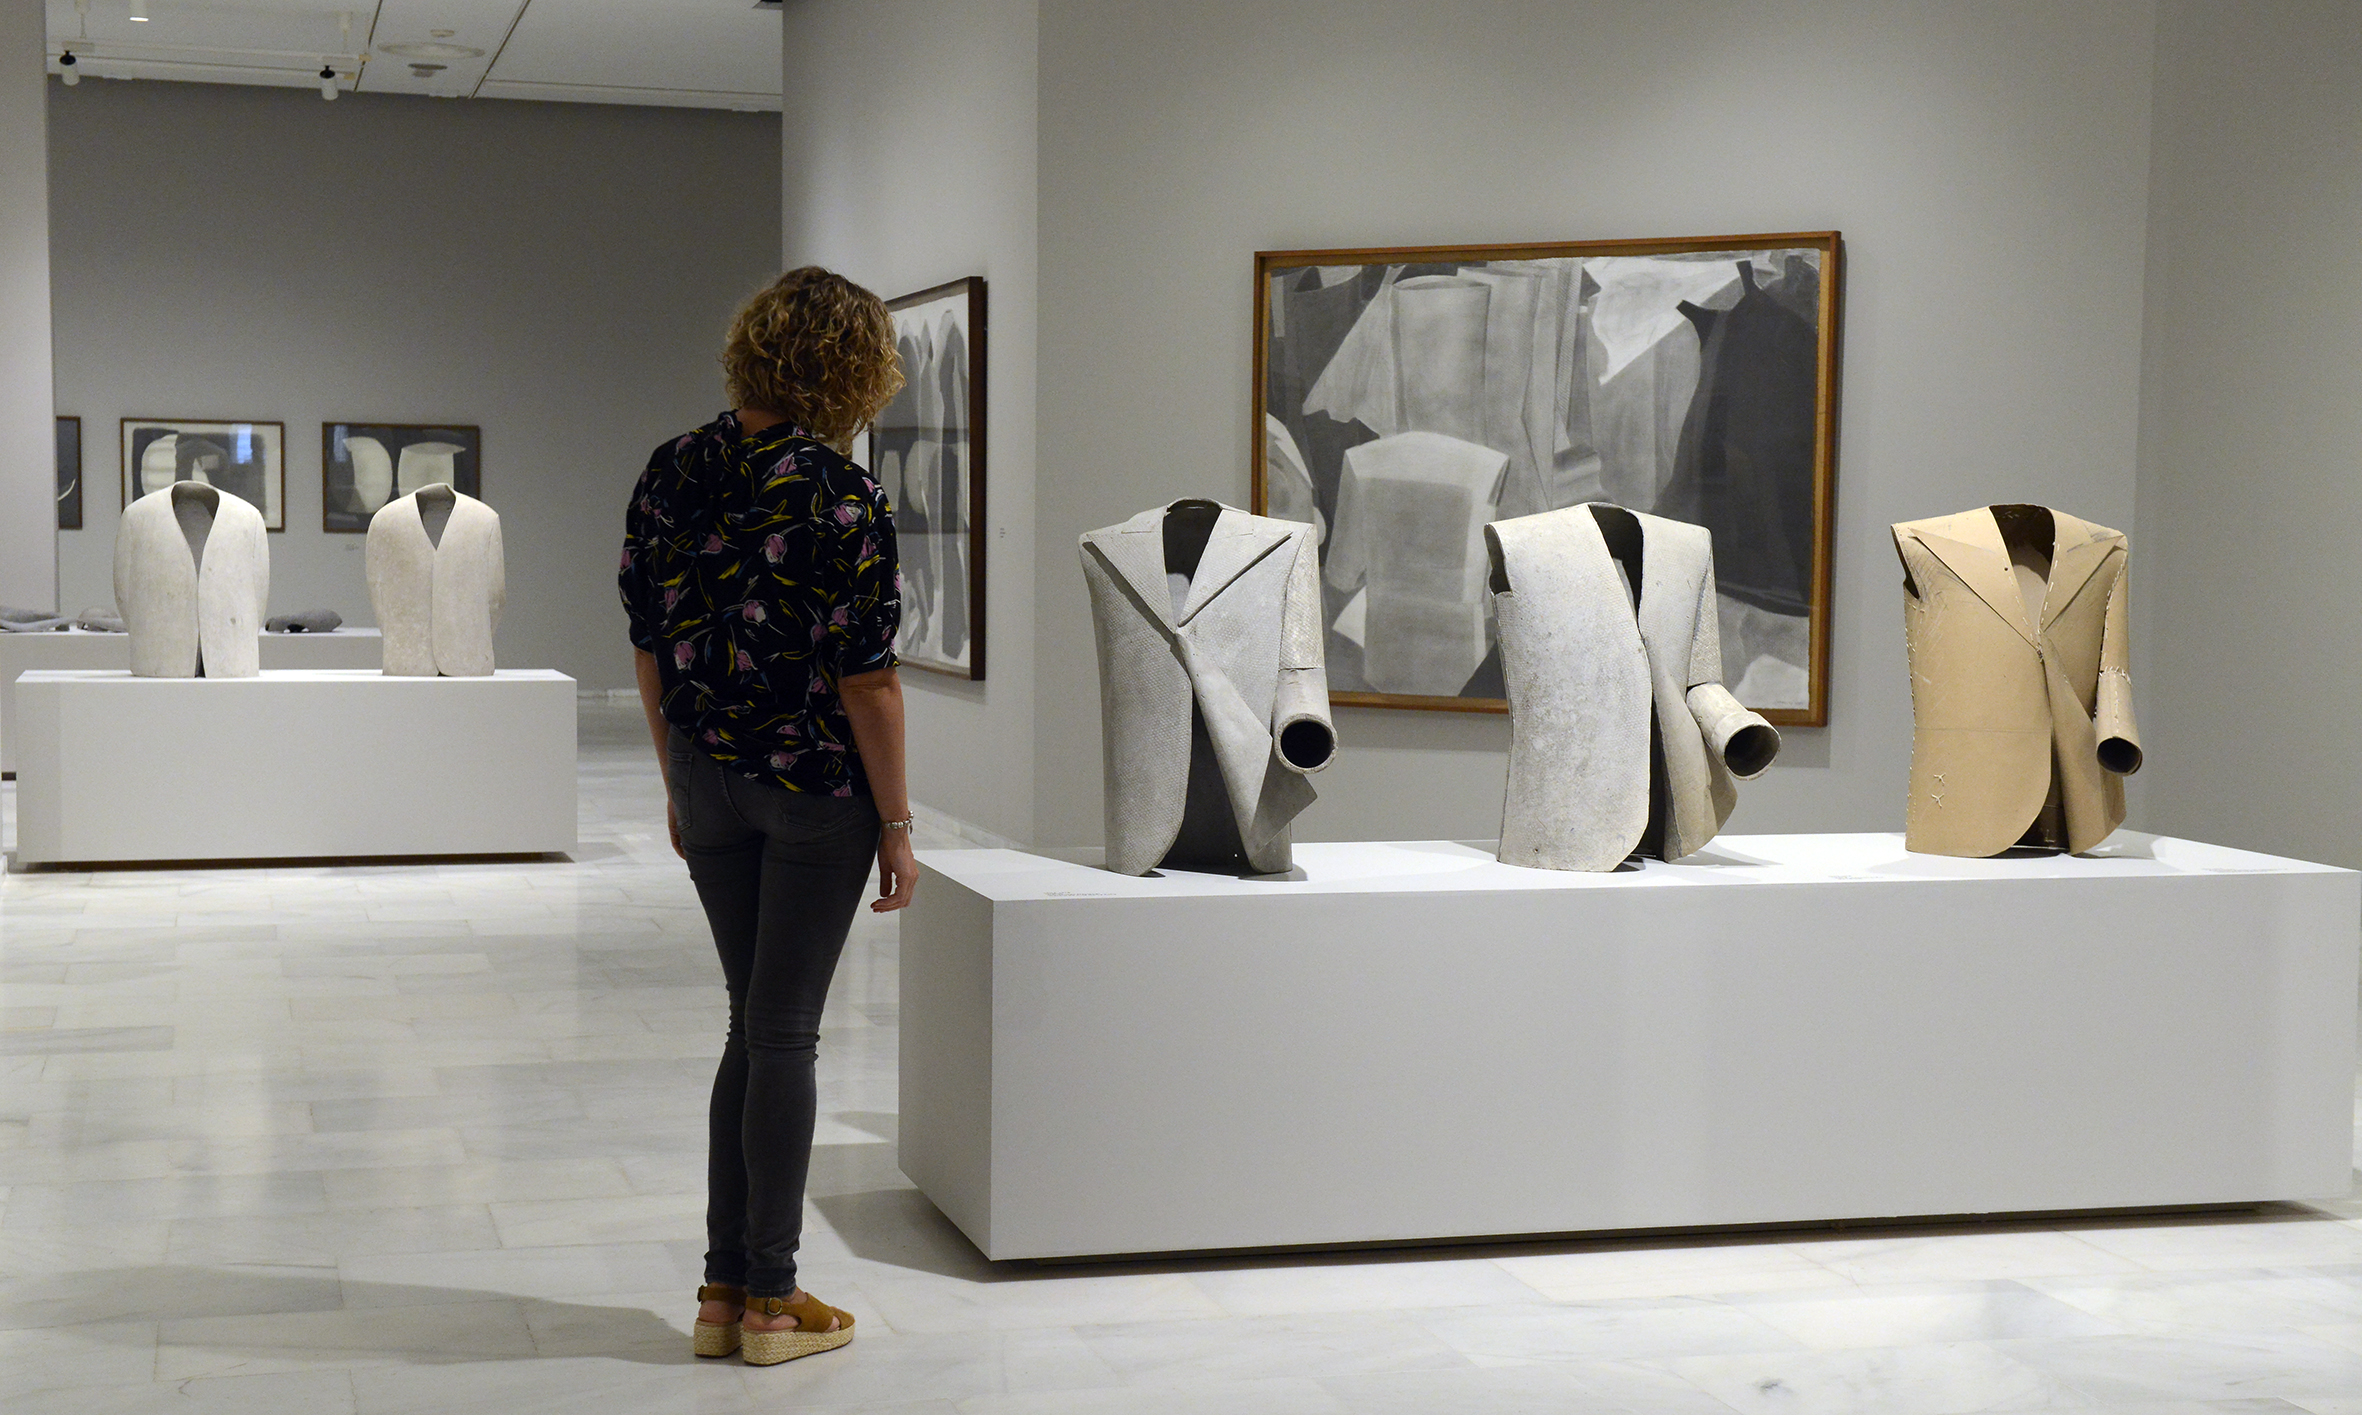 Una persona observa las esculturas de Cardells en la exposición